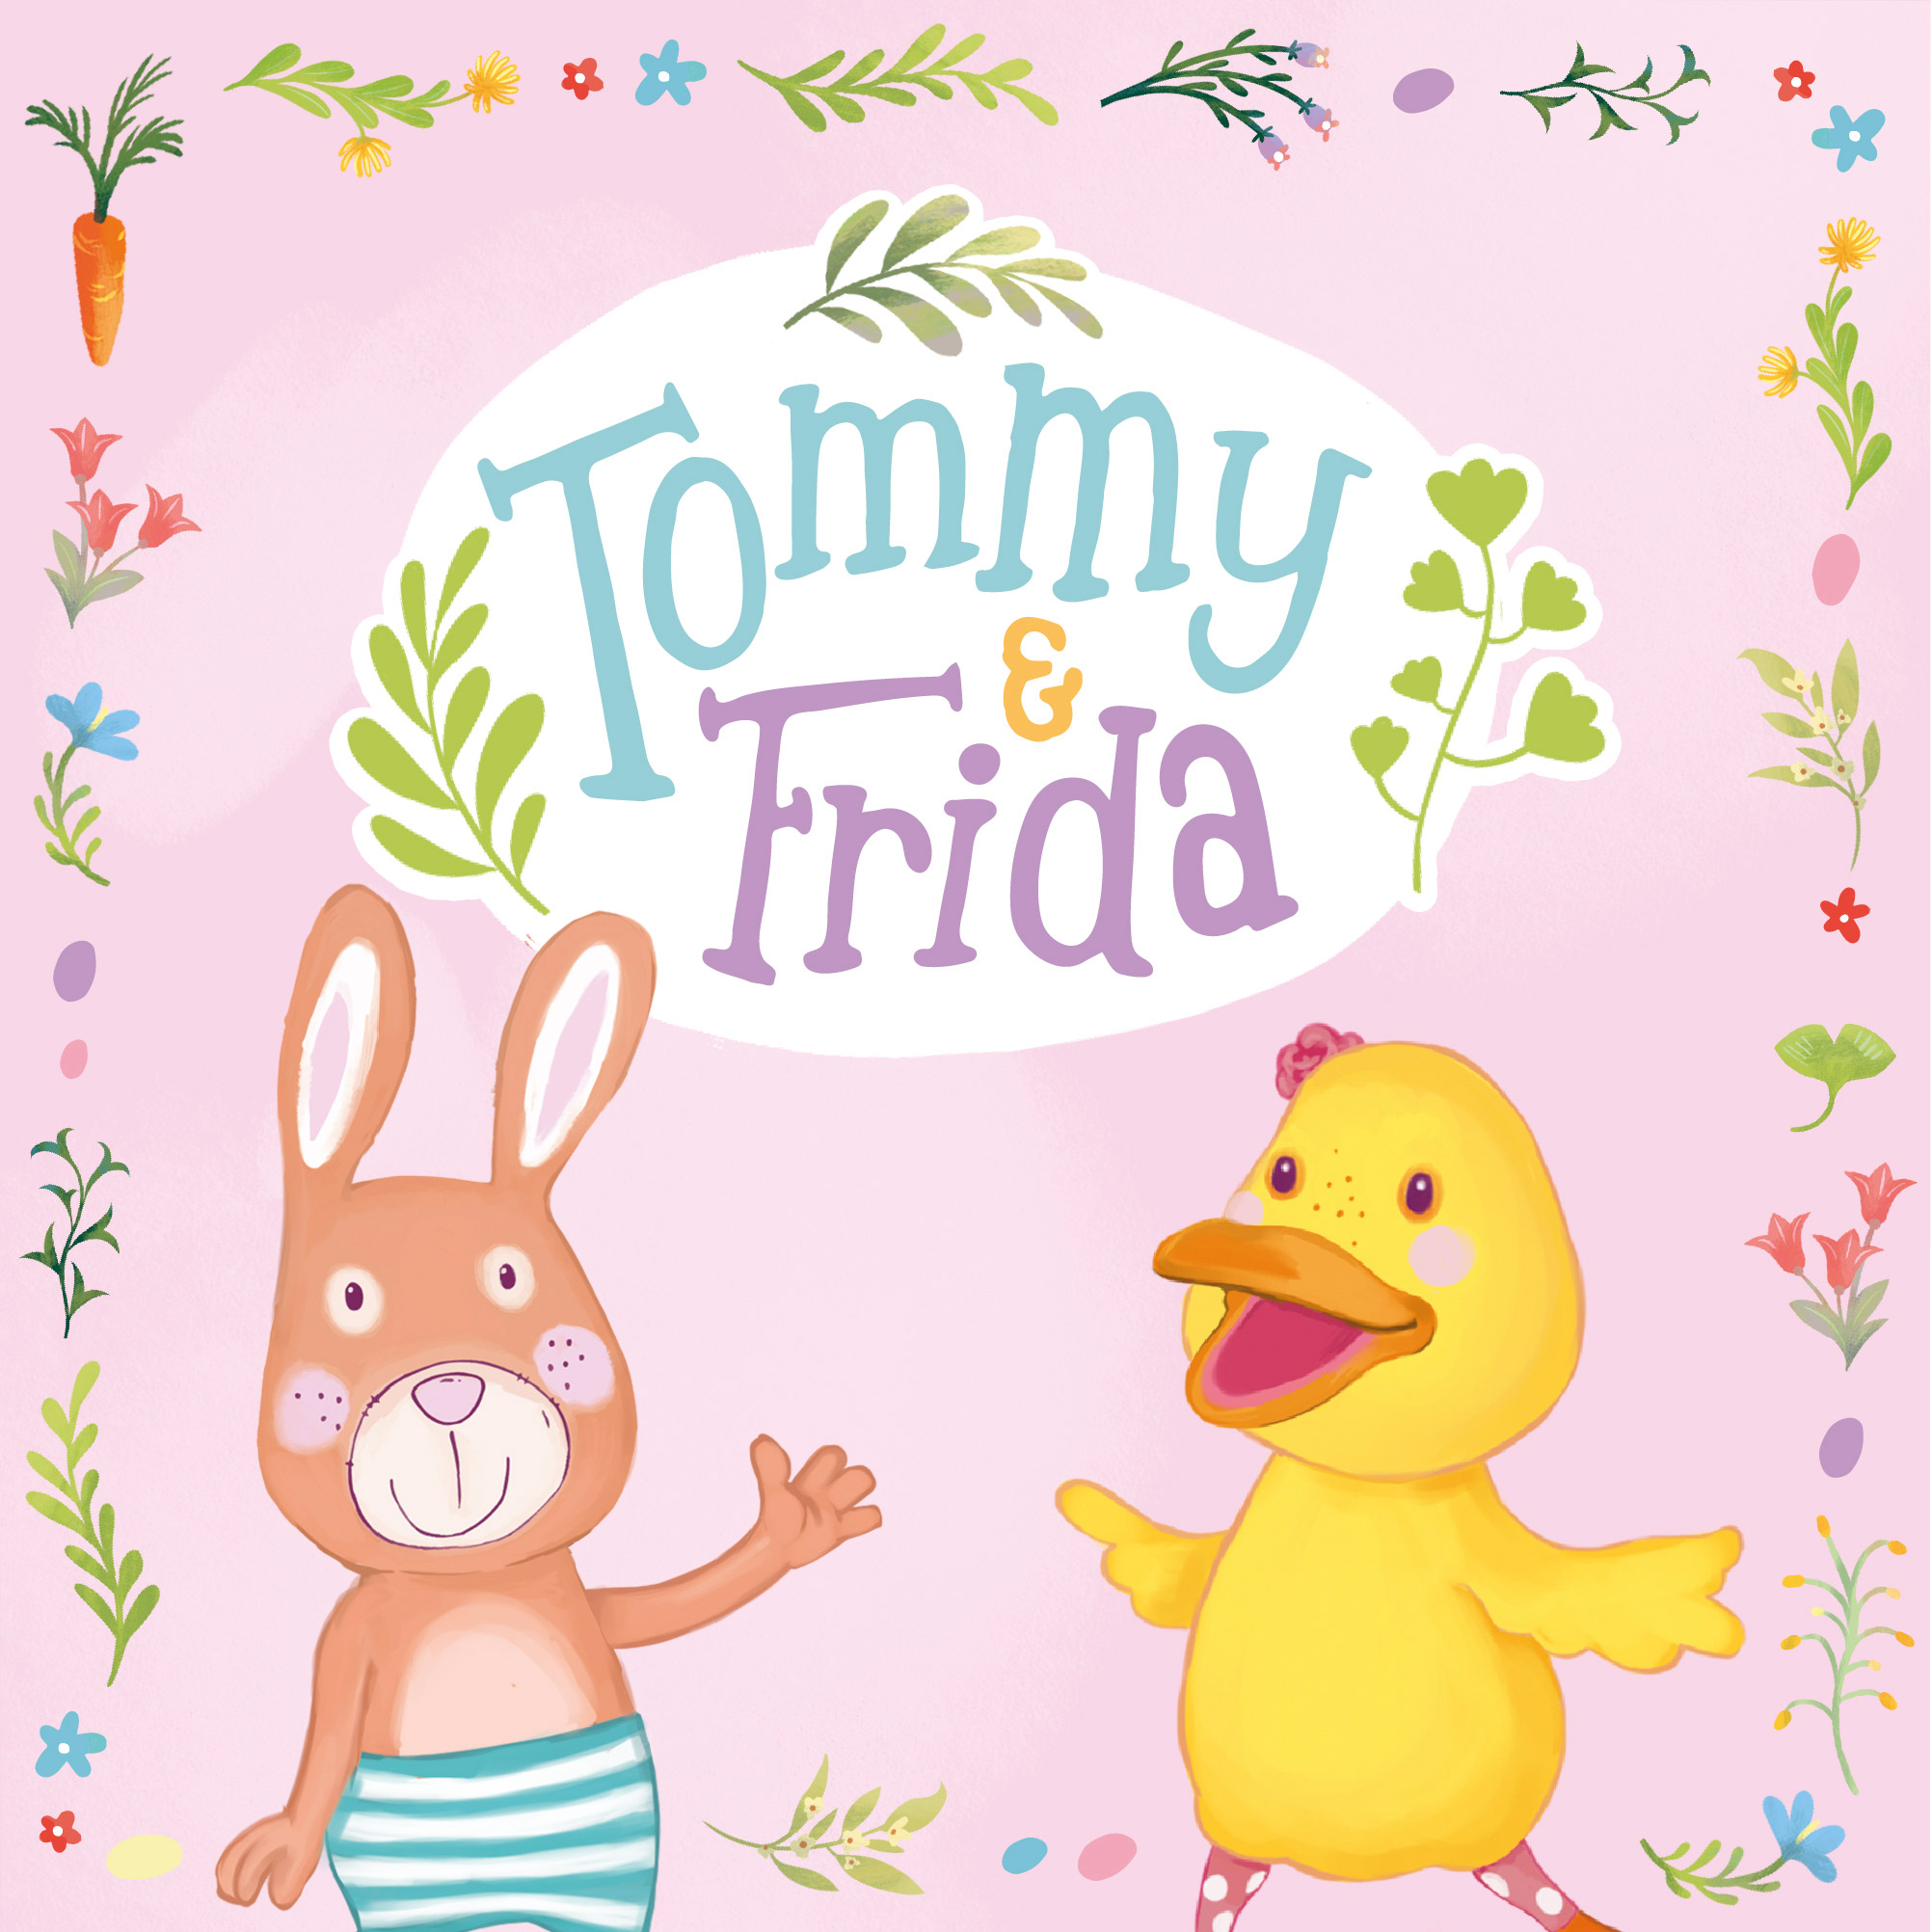 TOMMY & FRIDA